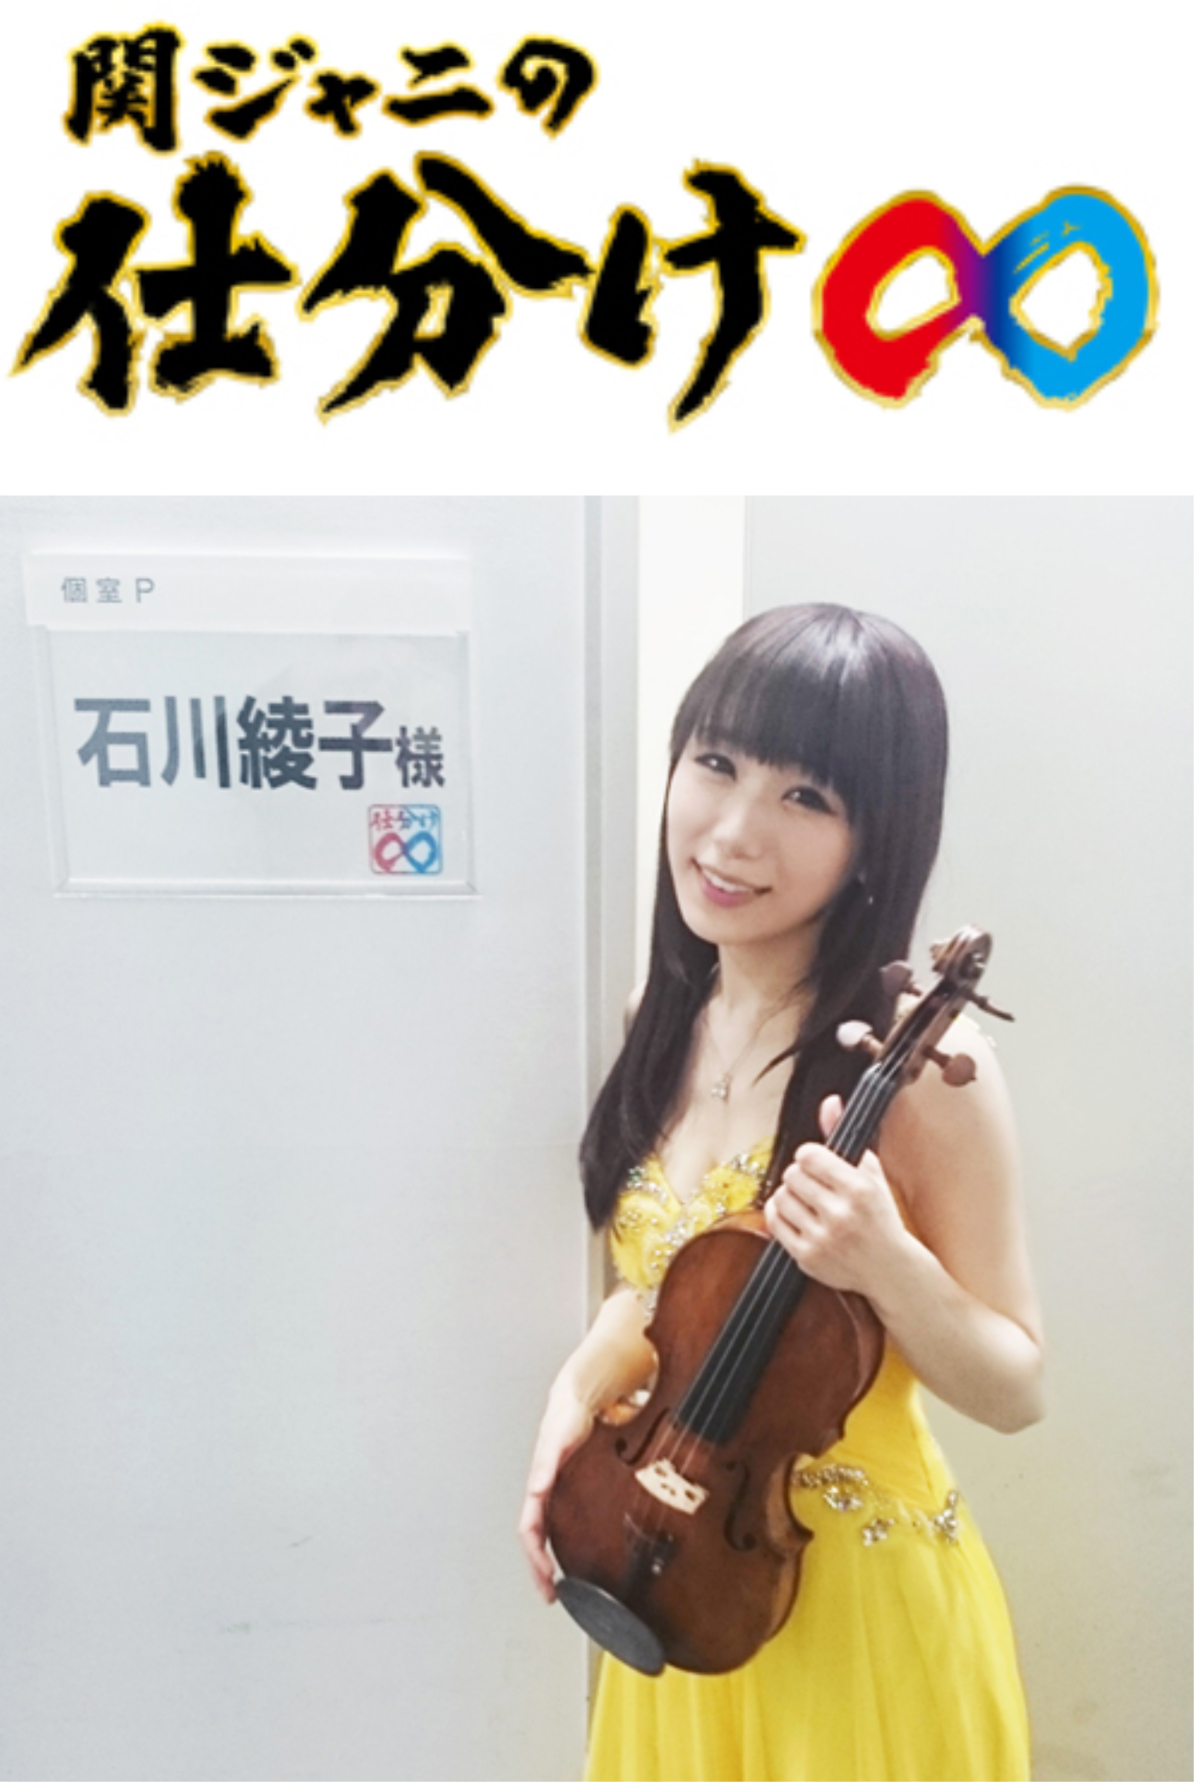 http://ayako-ishikawa.com/schedule/Shiwake.jpg